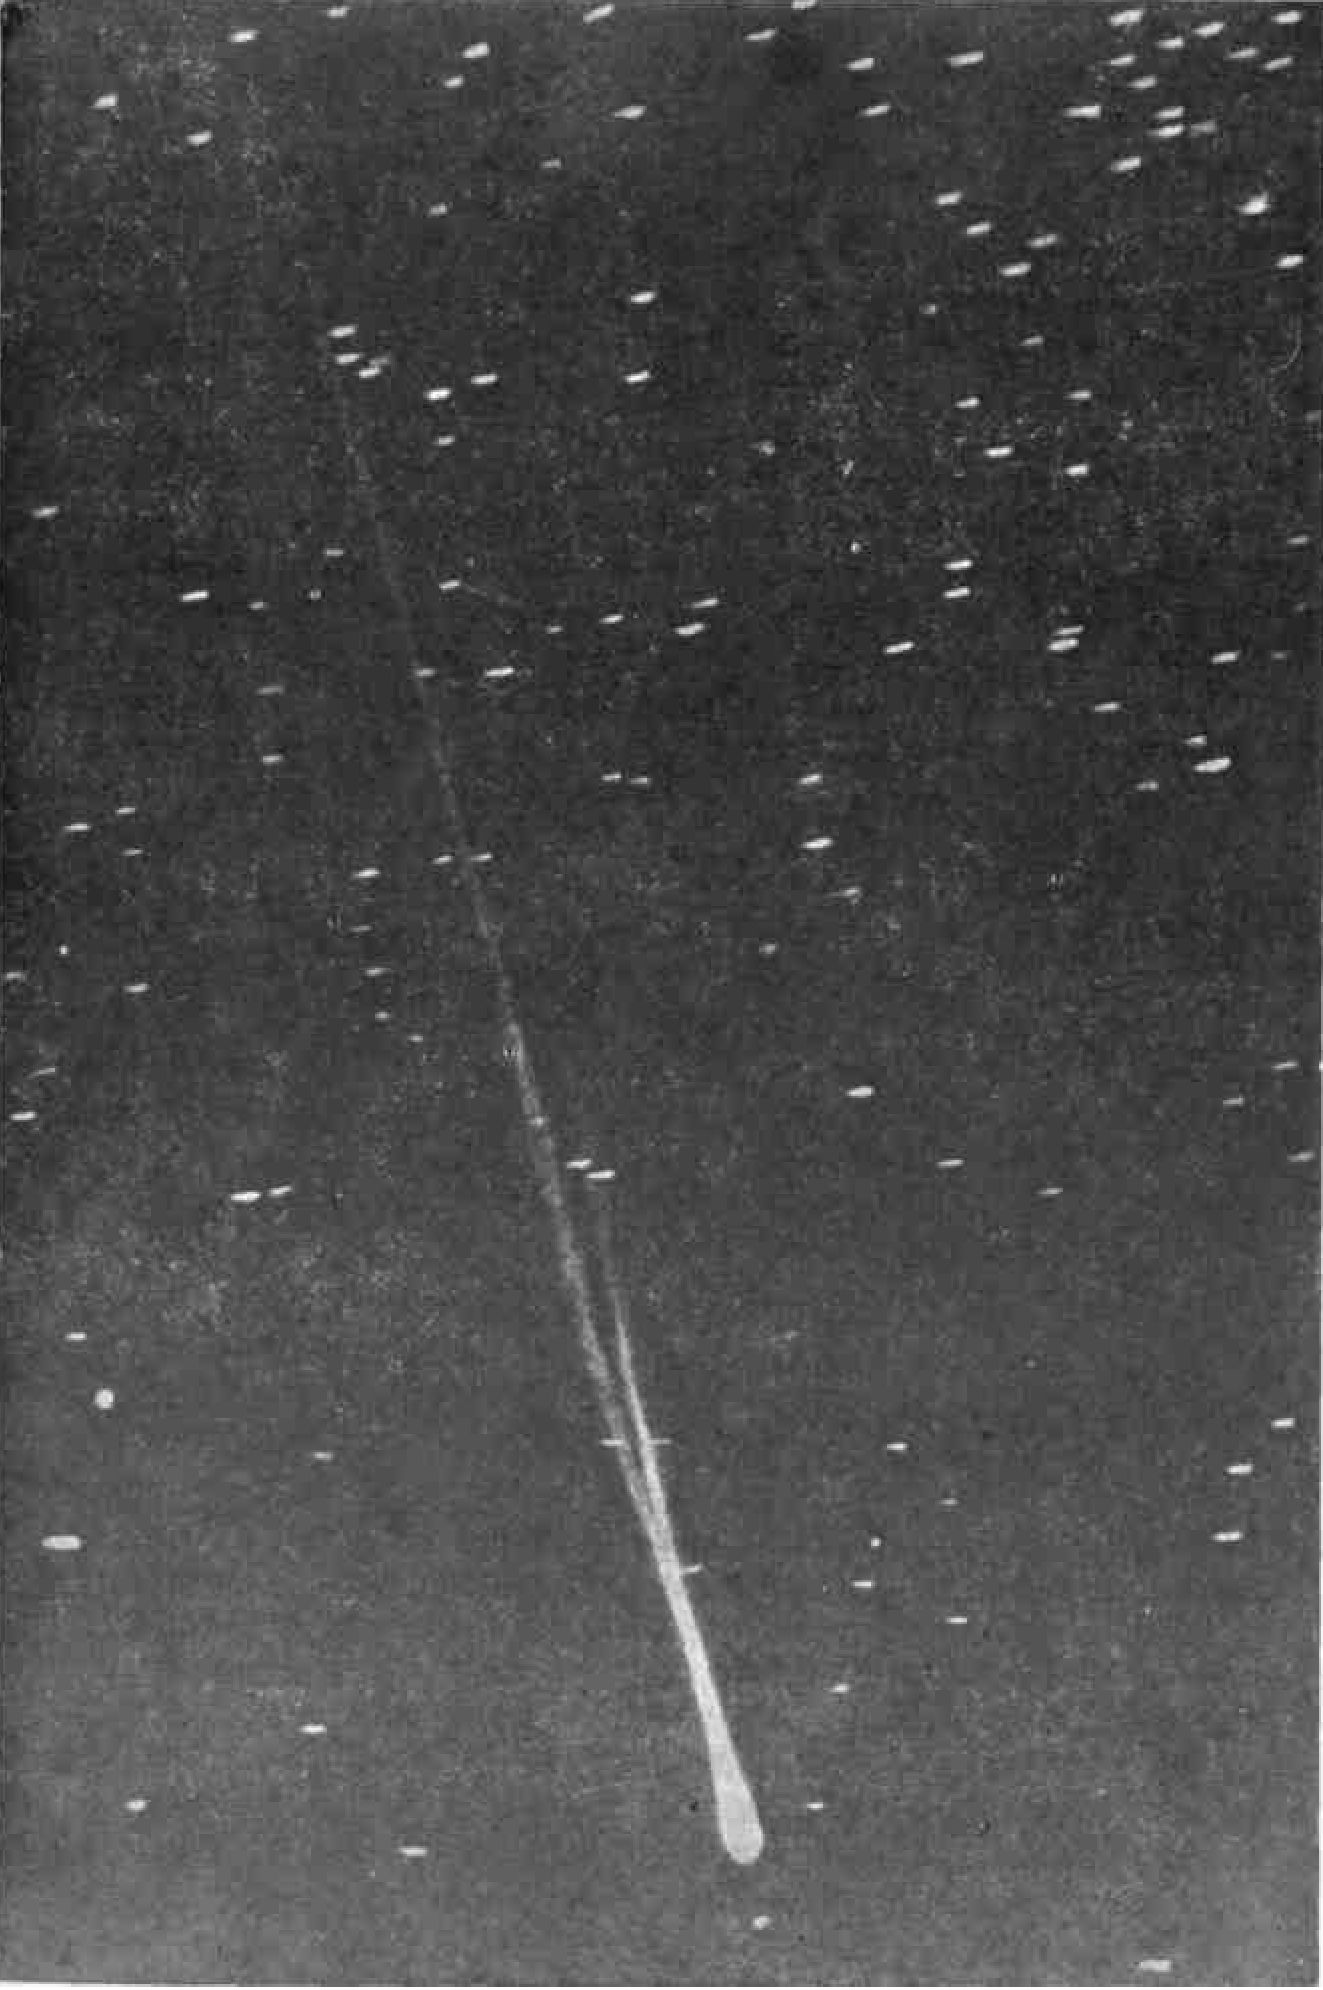 Комета 1939 III, открытая 15 апреля 1939 г. И.В. Ахмаровым и С.Н. Юрловым (снимок Зонненбергской обсерватории, ГДР)